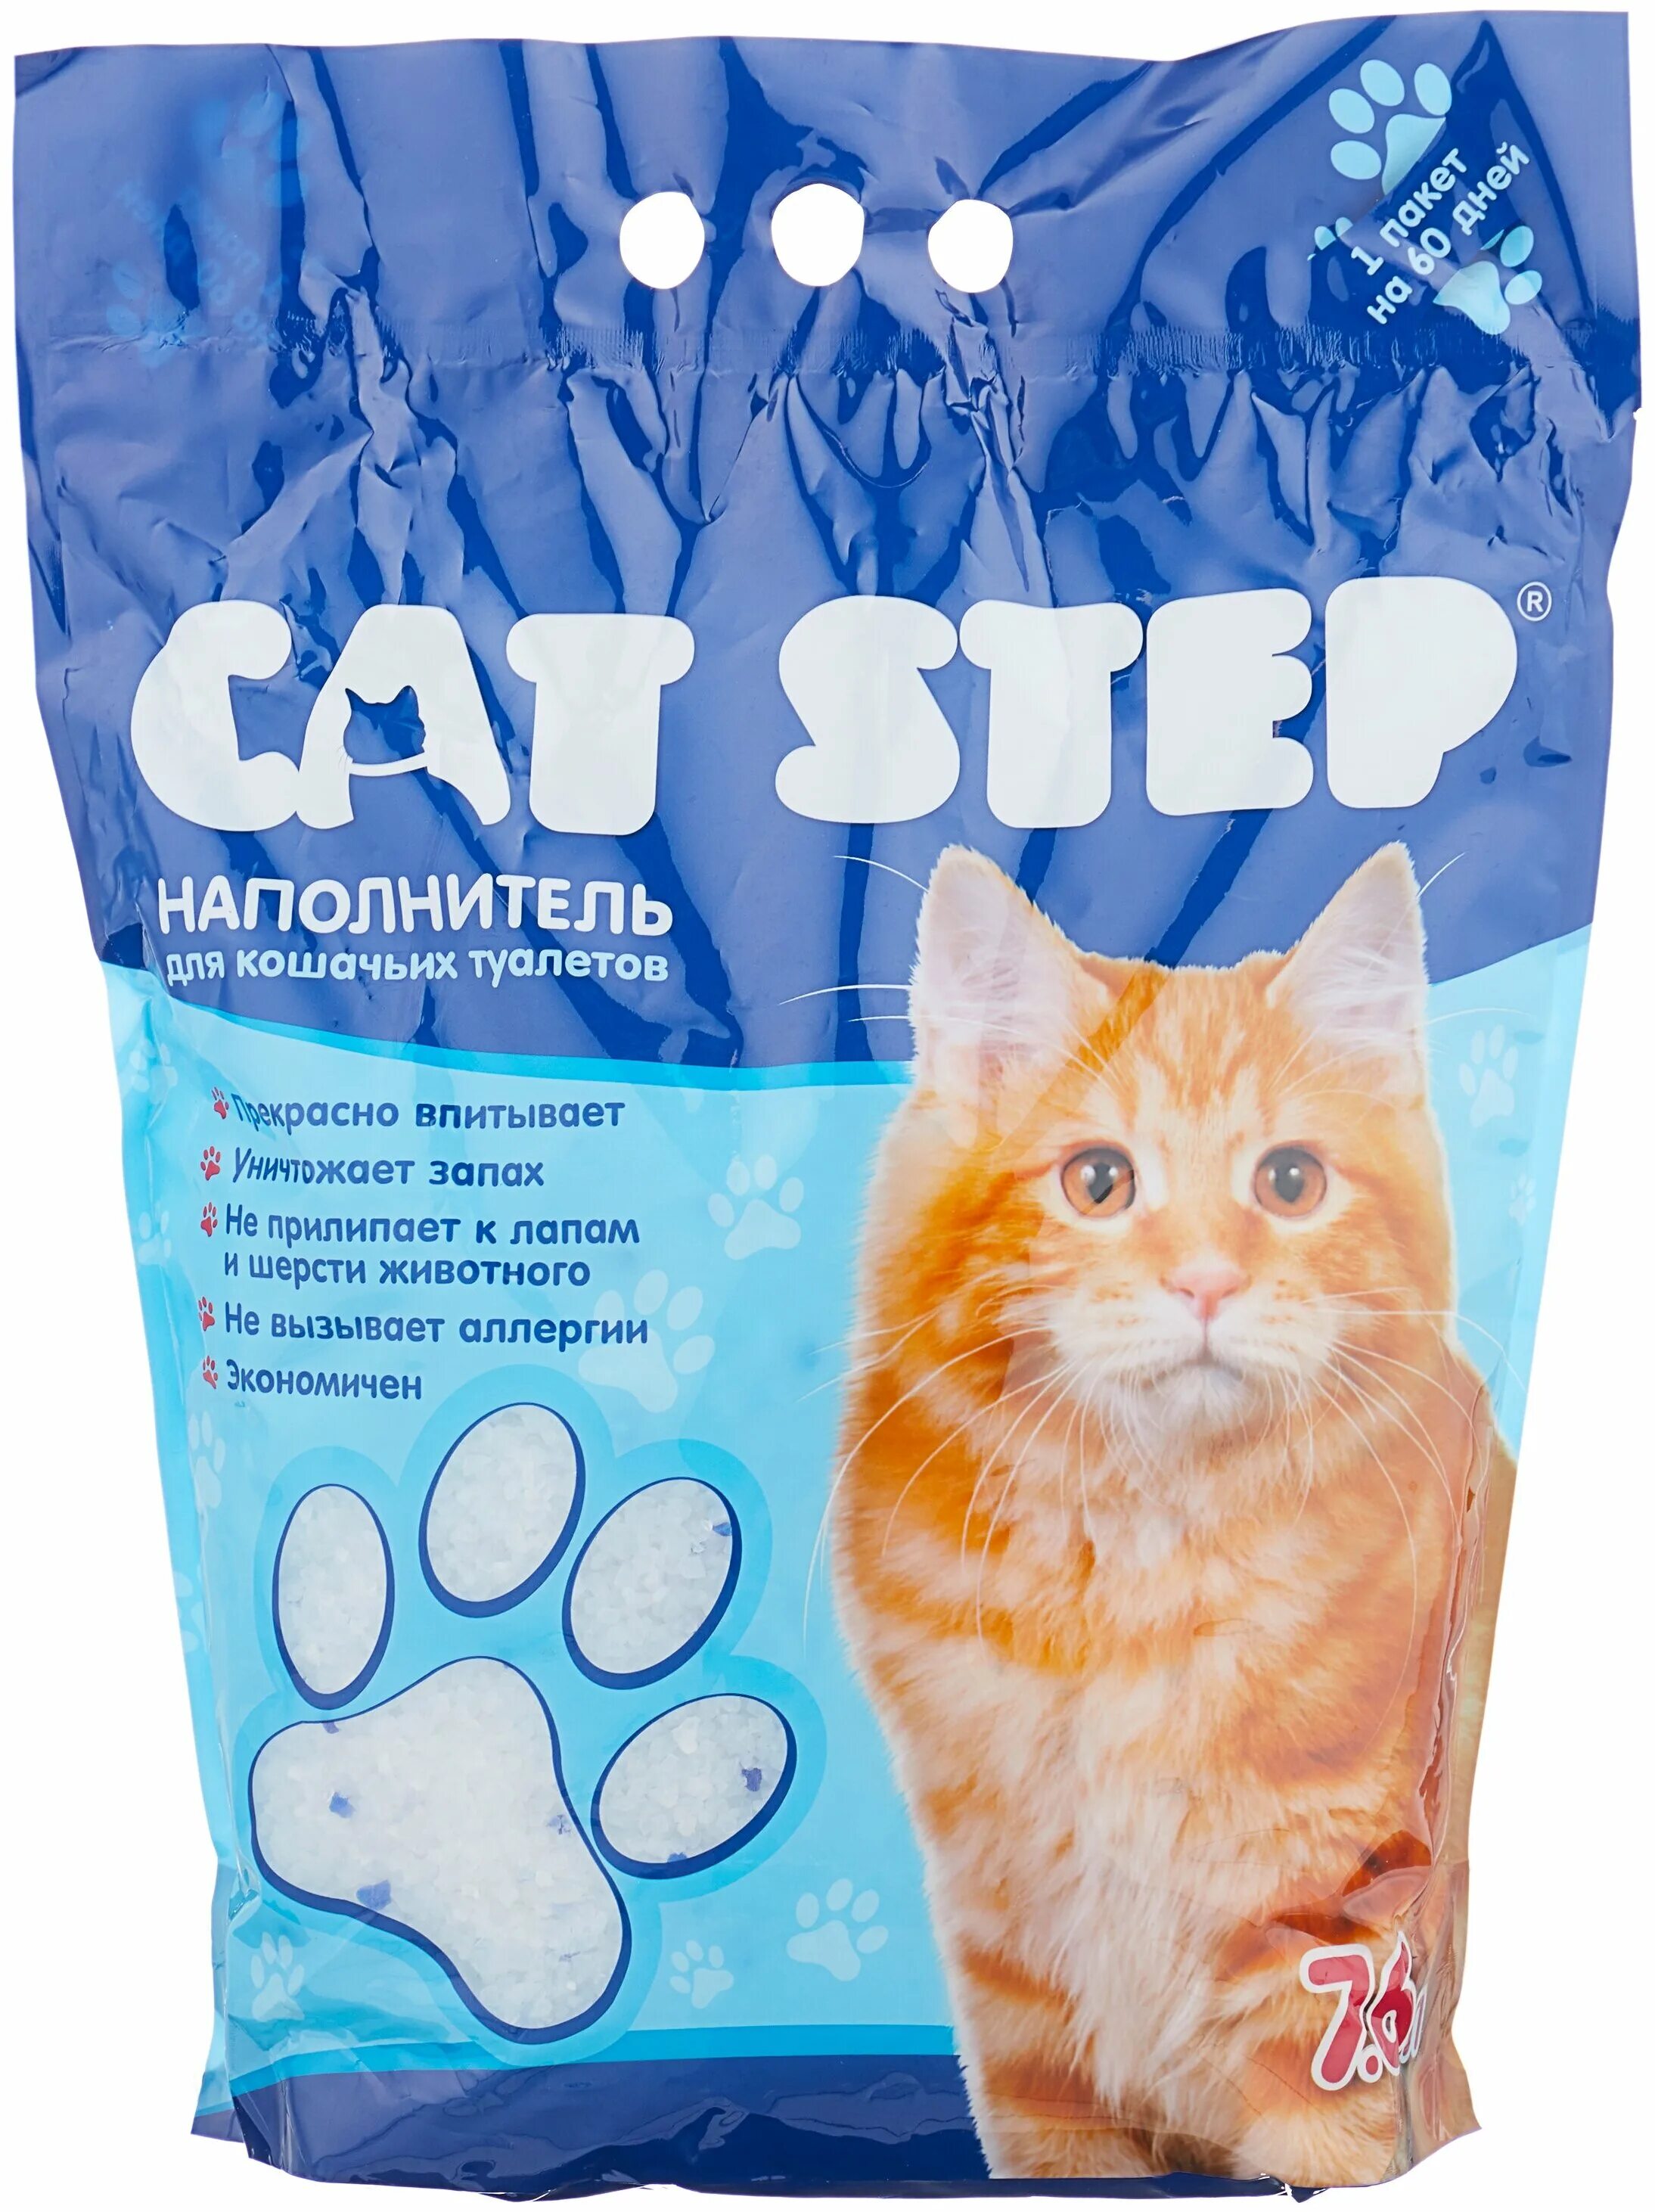 Кошачий наполнитель Cat Step. Силикагелевый наполнитель Cat Step. Cat Step наполнитель силикагель. Cat Step силикагелевый 7.6. Купить дешевый наполнитель для кошачьего туалета